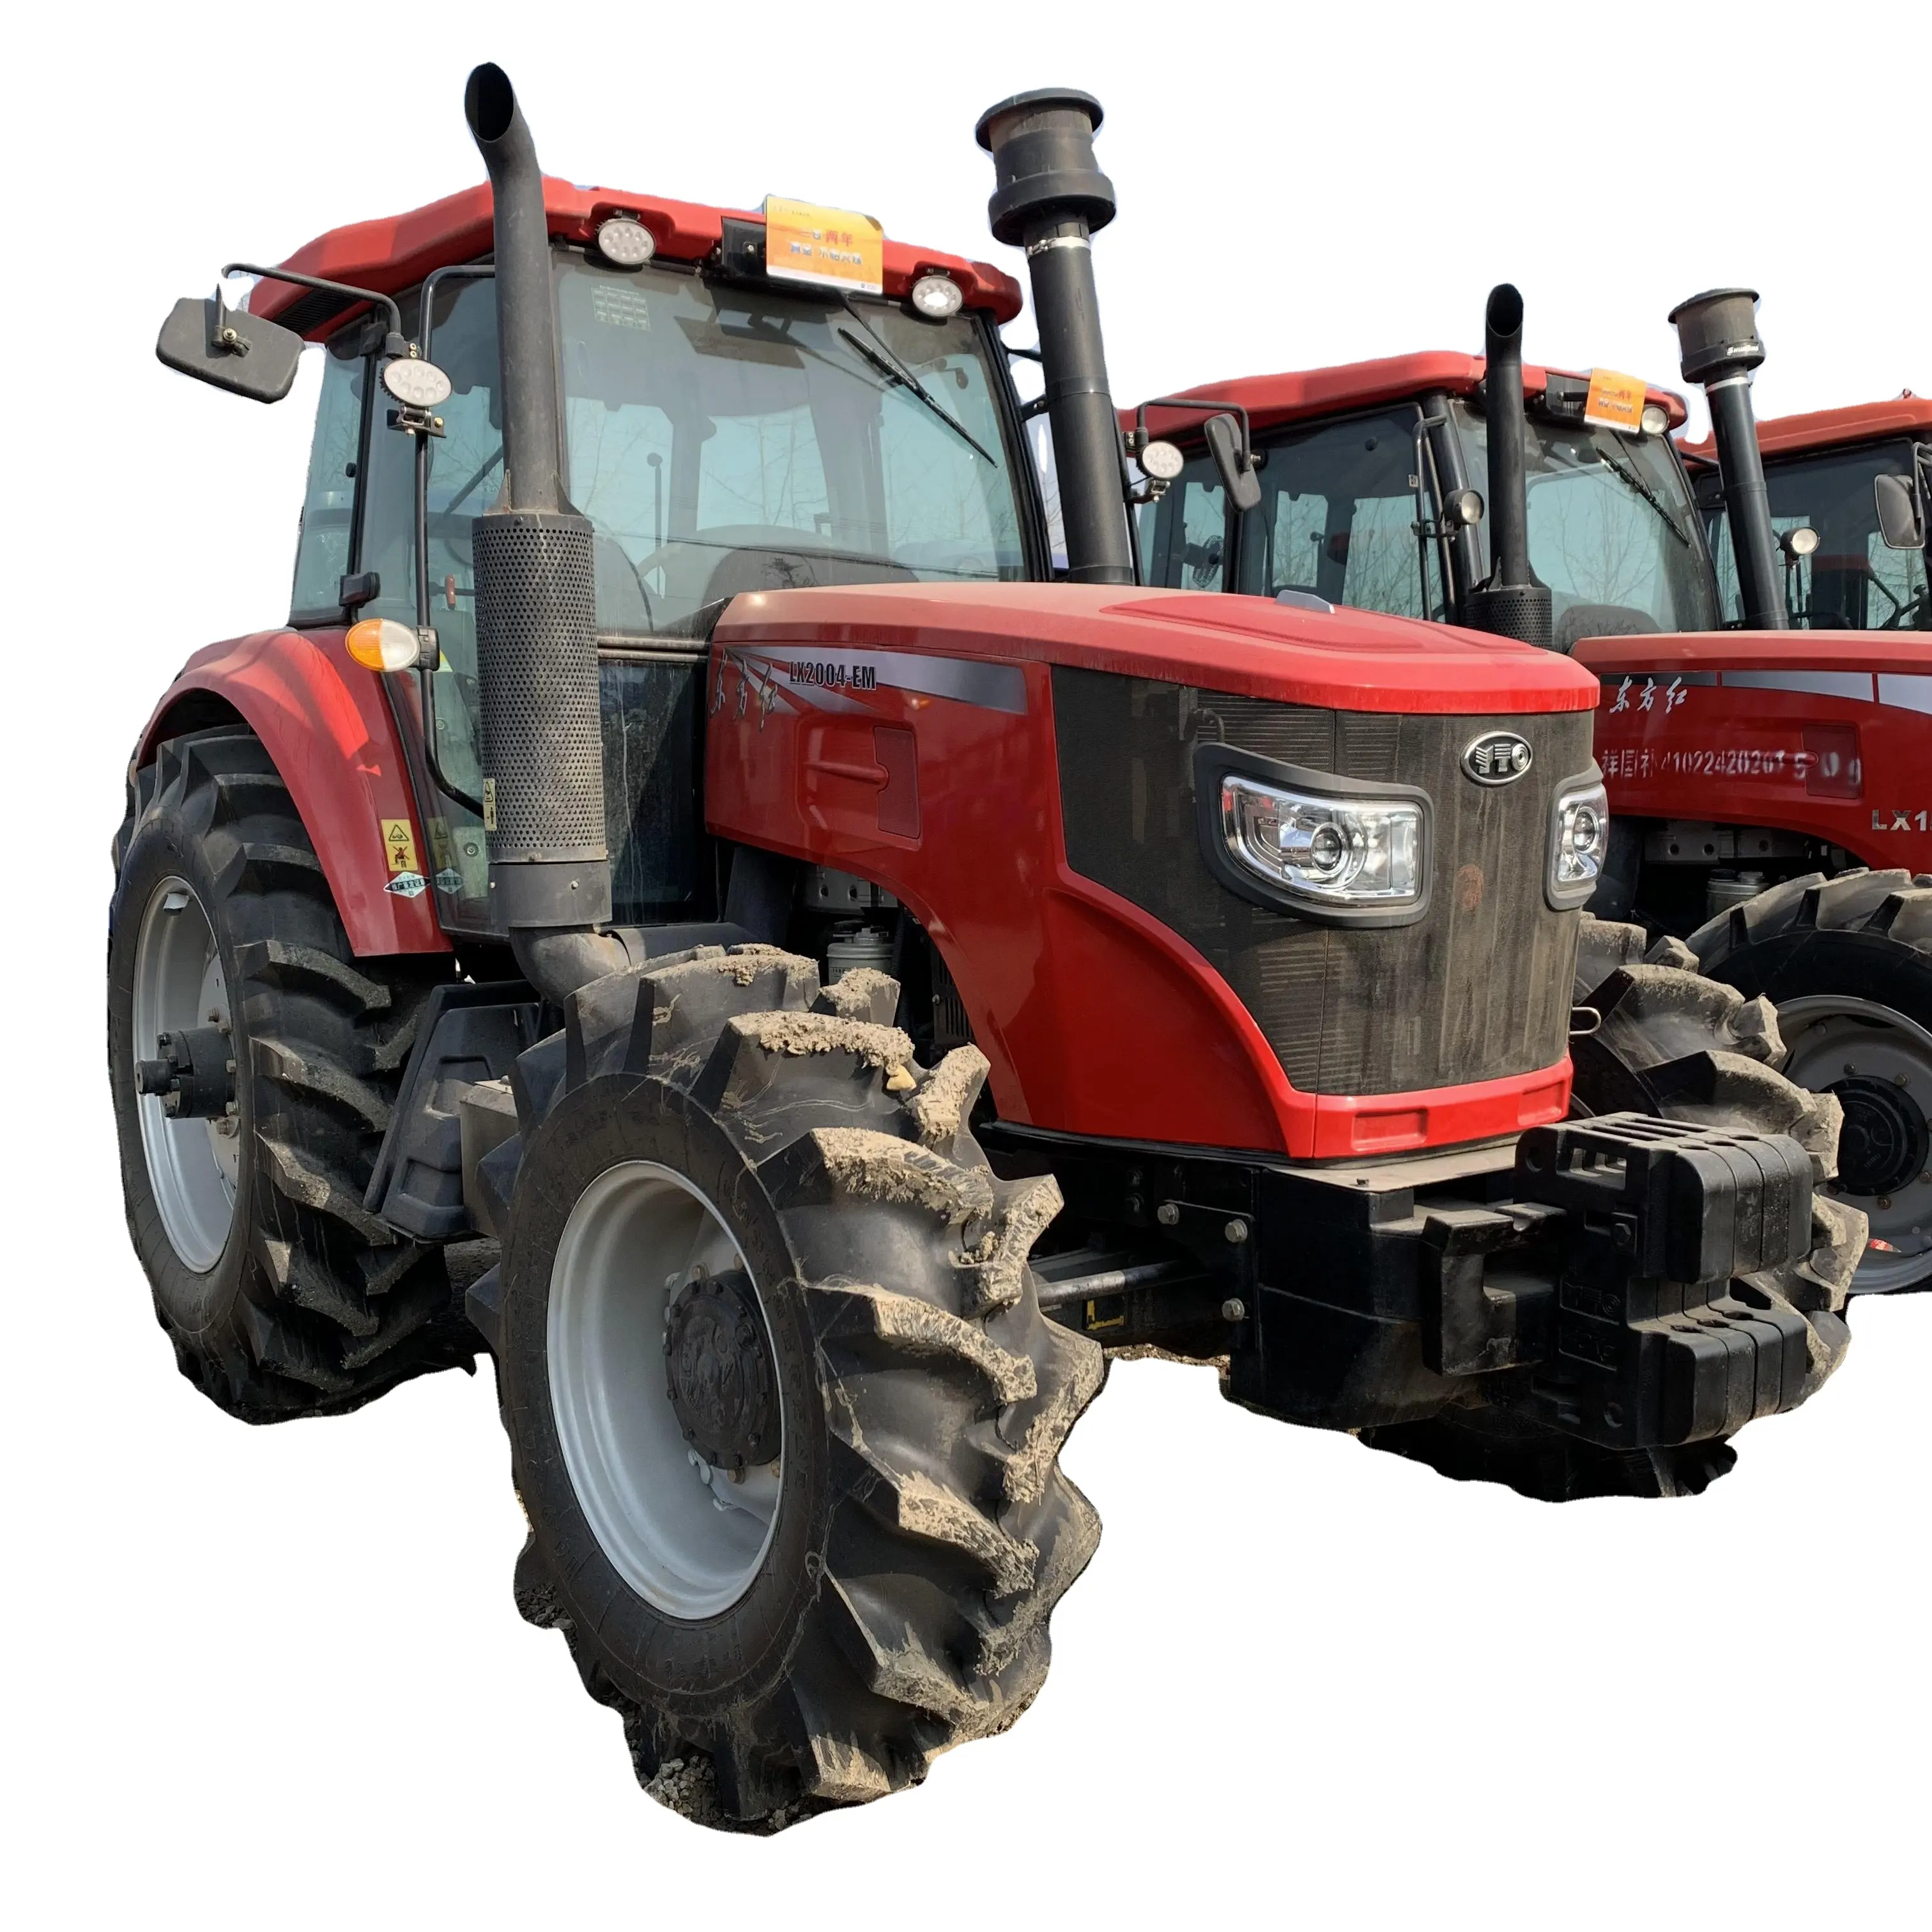 foton lovol 404 tractor parts agricolas usados de 70 hp accessories farm tractor